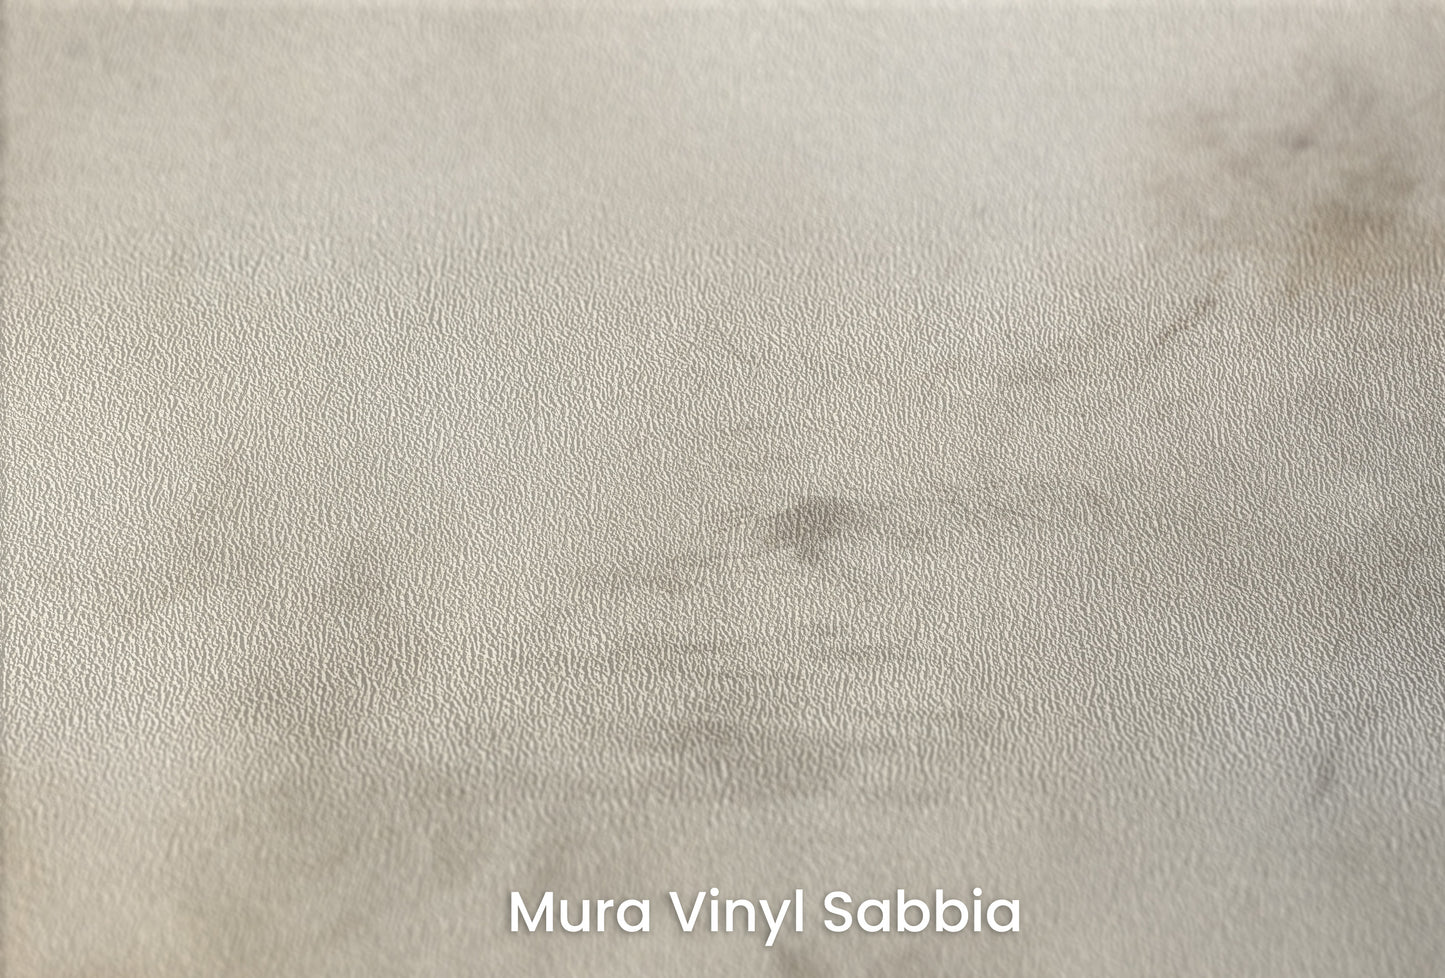 Zbliżenie na artystyczną fototapetę o nazwie WHISPERING CLOUD WALTZ na podłożu Mura Vinyl Sabbia struktura grubego ziarna piasku.